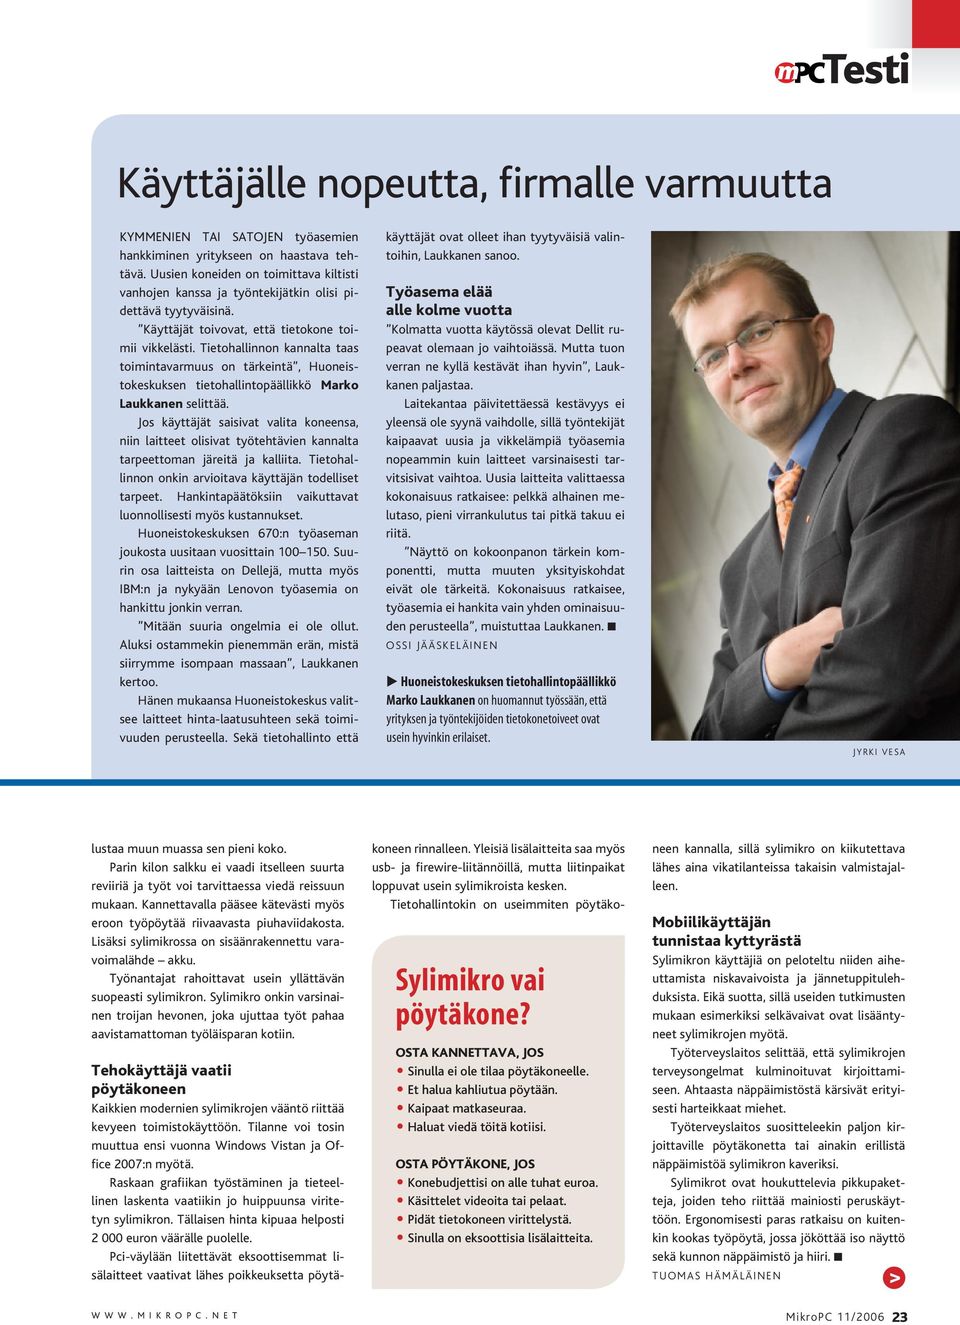 Tietohallinnon kannalta taas toimintavarmuus on tärkeintä, Huoneistokeskuksen tietohallintopäällikkö Marko Laukkanen selittää.